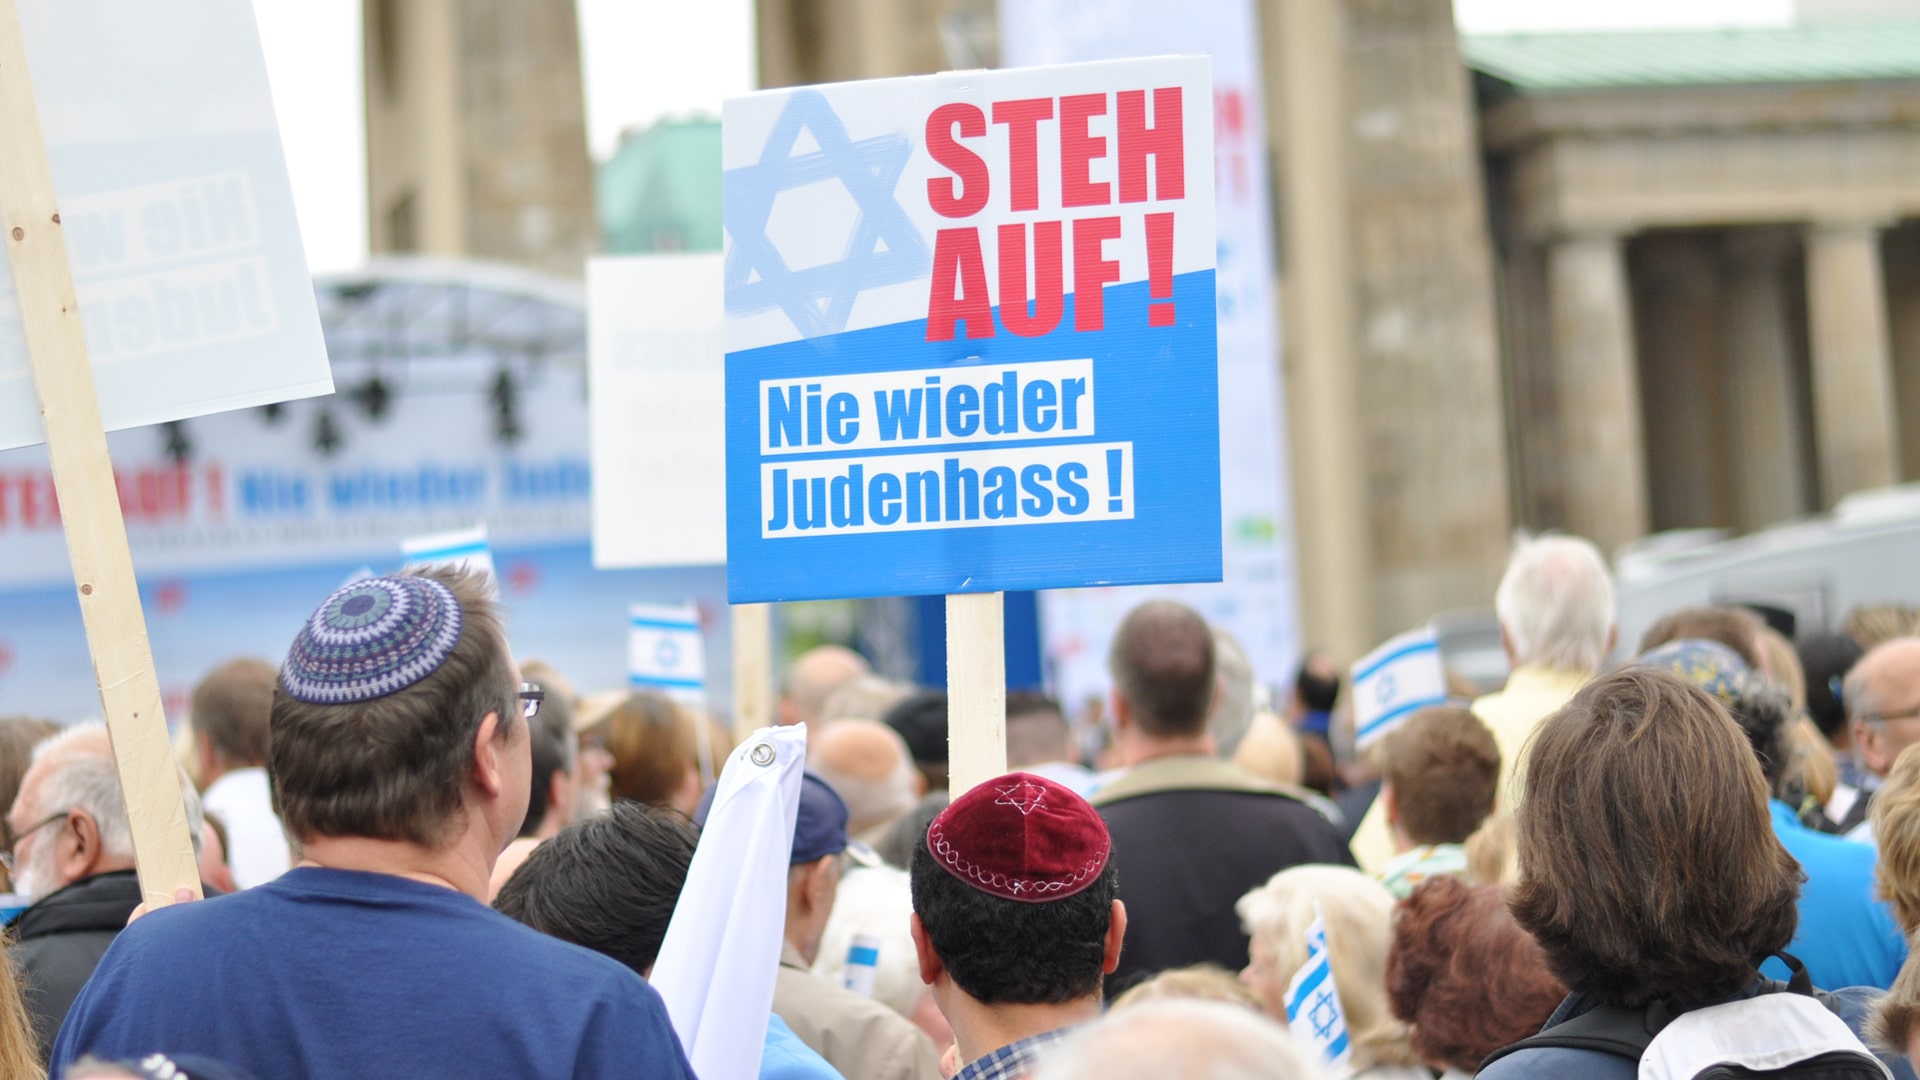 Hat der Antisemitismus einen neuen Höhepunkt erreicht? Eine Studie des Jüdischen Weltkongresses bringt erschreckende Ergebnisse.